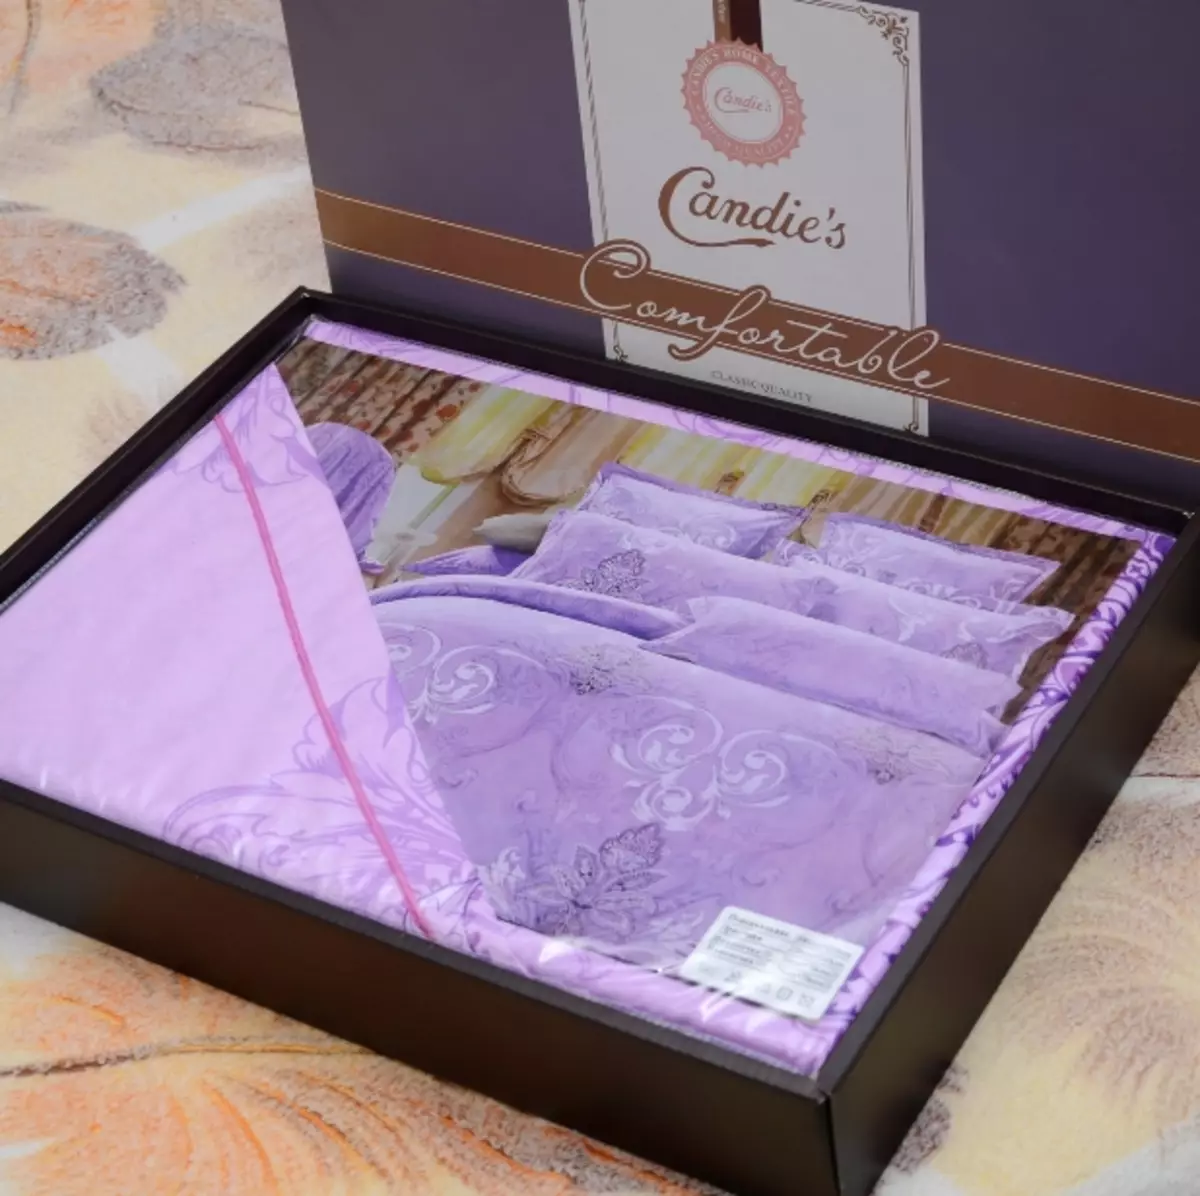 Candies Windows Linen: Nagara produsén. Kits Turki dina kotak kado. Waring sareng ulasan pelanggan 25887_12